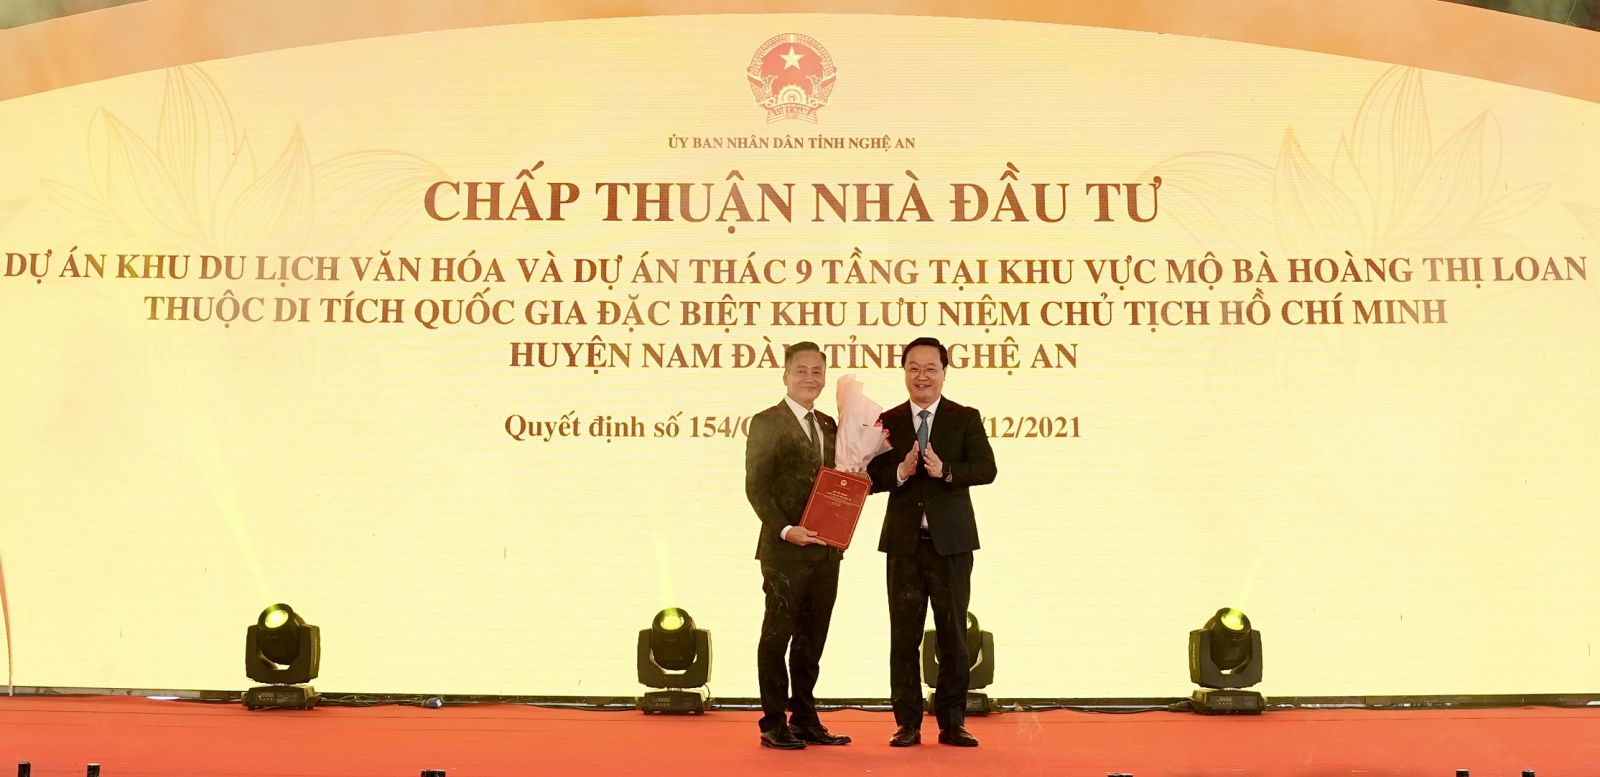 Ông Nguyễn Đức Trung, Phó Bí thư Tỉnh uỷ, Chủ tịch UBND tỉnh Nghệ An (bên phải) trao Quyết định chấp thuận Nhà đầu tư thực hiện dự án cho Ông Vũ Trọng Tuấn, Tổng Giám đốc Công ty cổ phần TMDV Tràng Thi (đơn vị thành viên của Tập đoàn T&T Group) (bên trái).